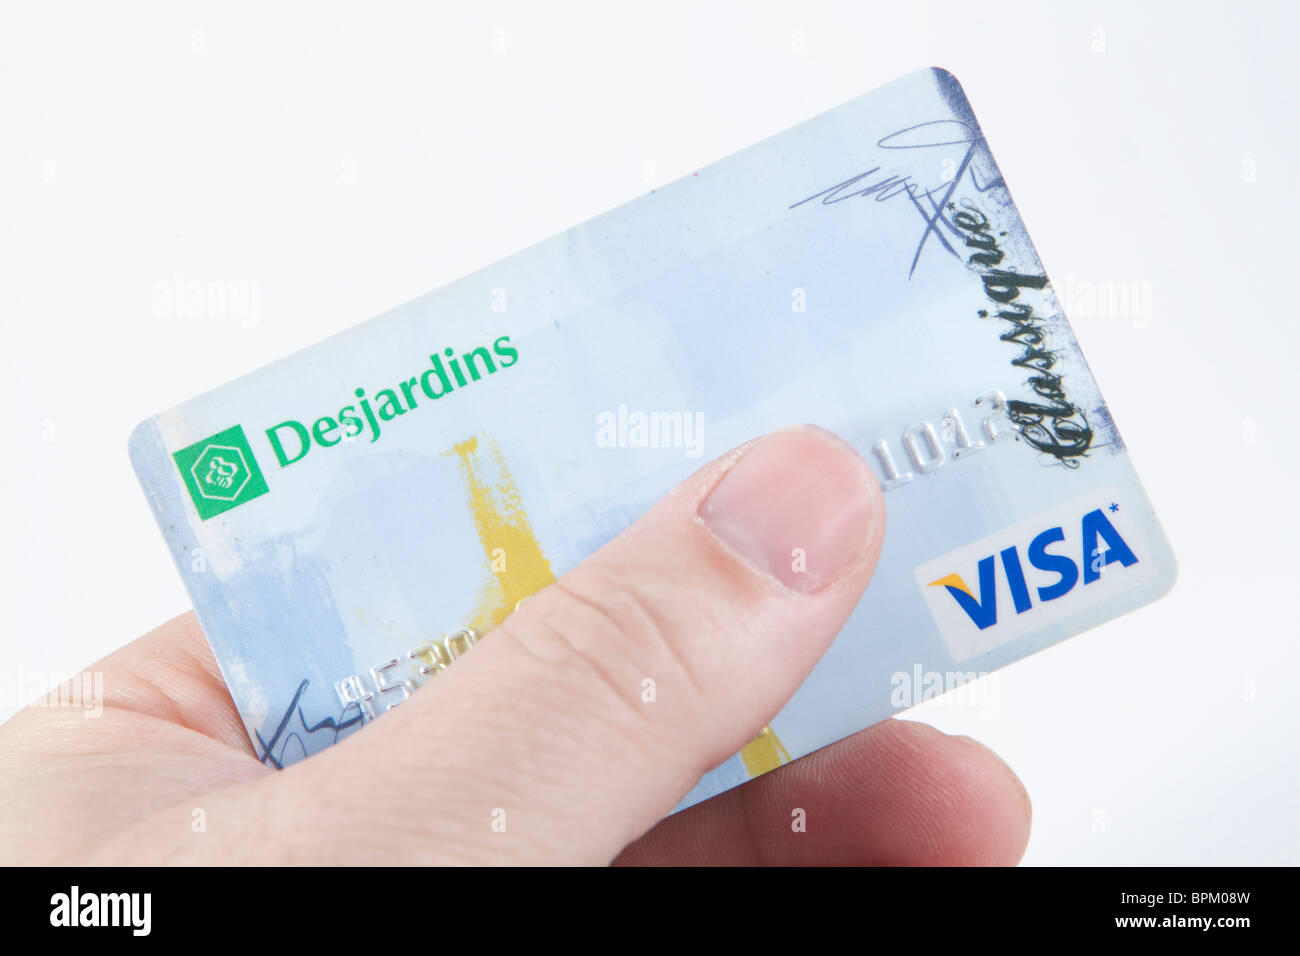 Une carte de crédit Visa Desjardins sur un fond blanc Photo Stock - Alamy